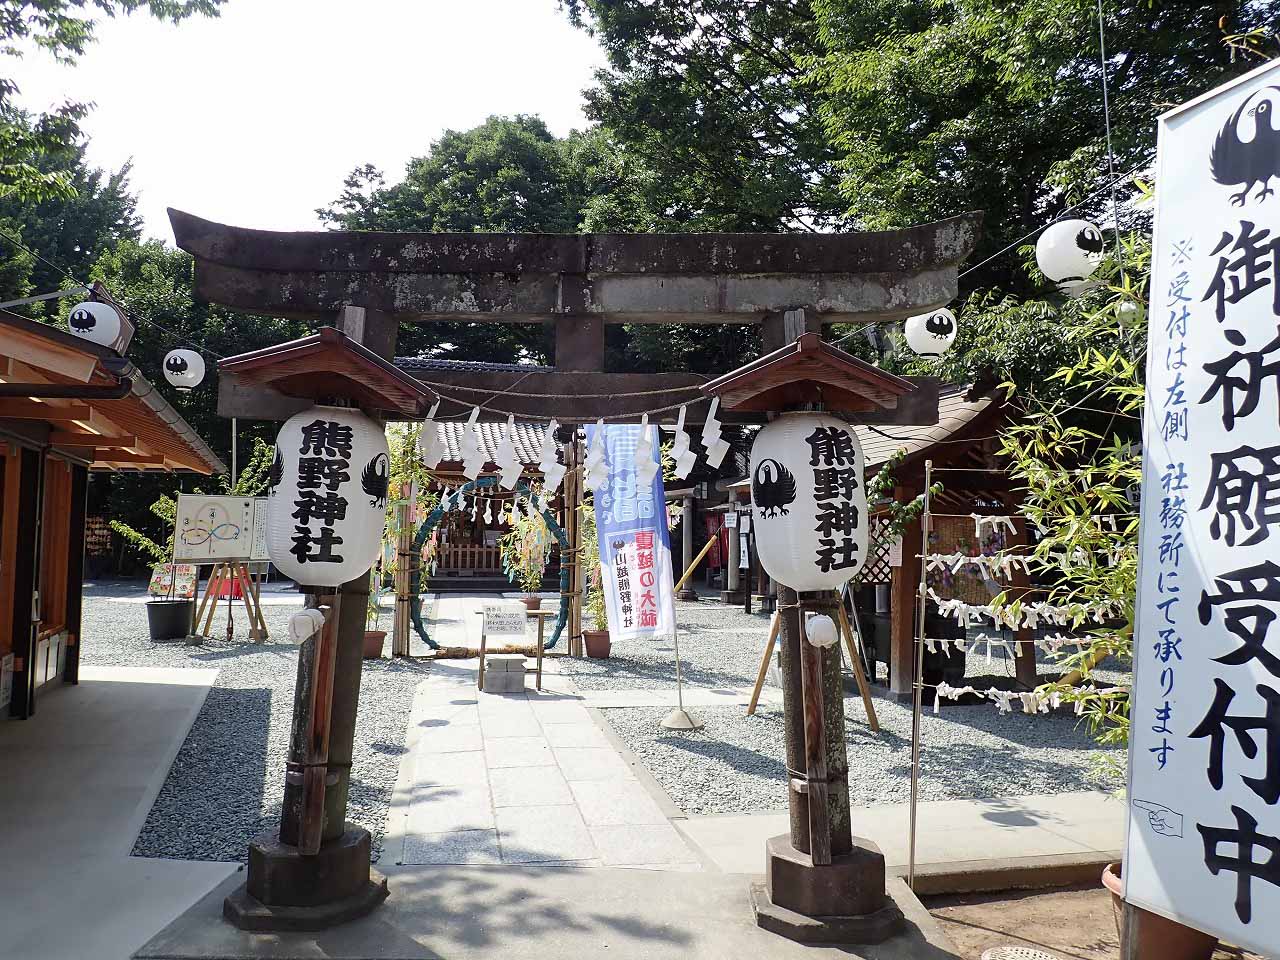 川越の人気の神社「川越熊野神社」